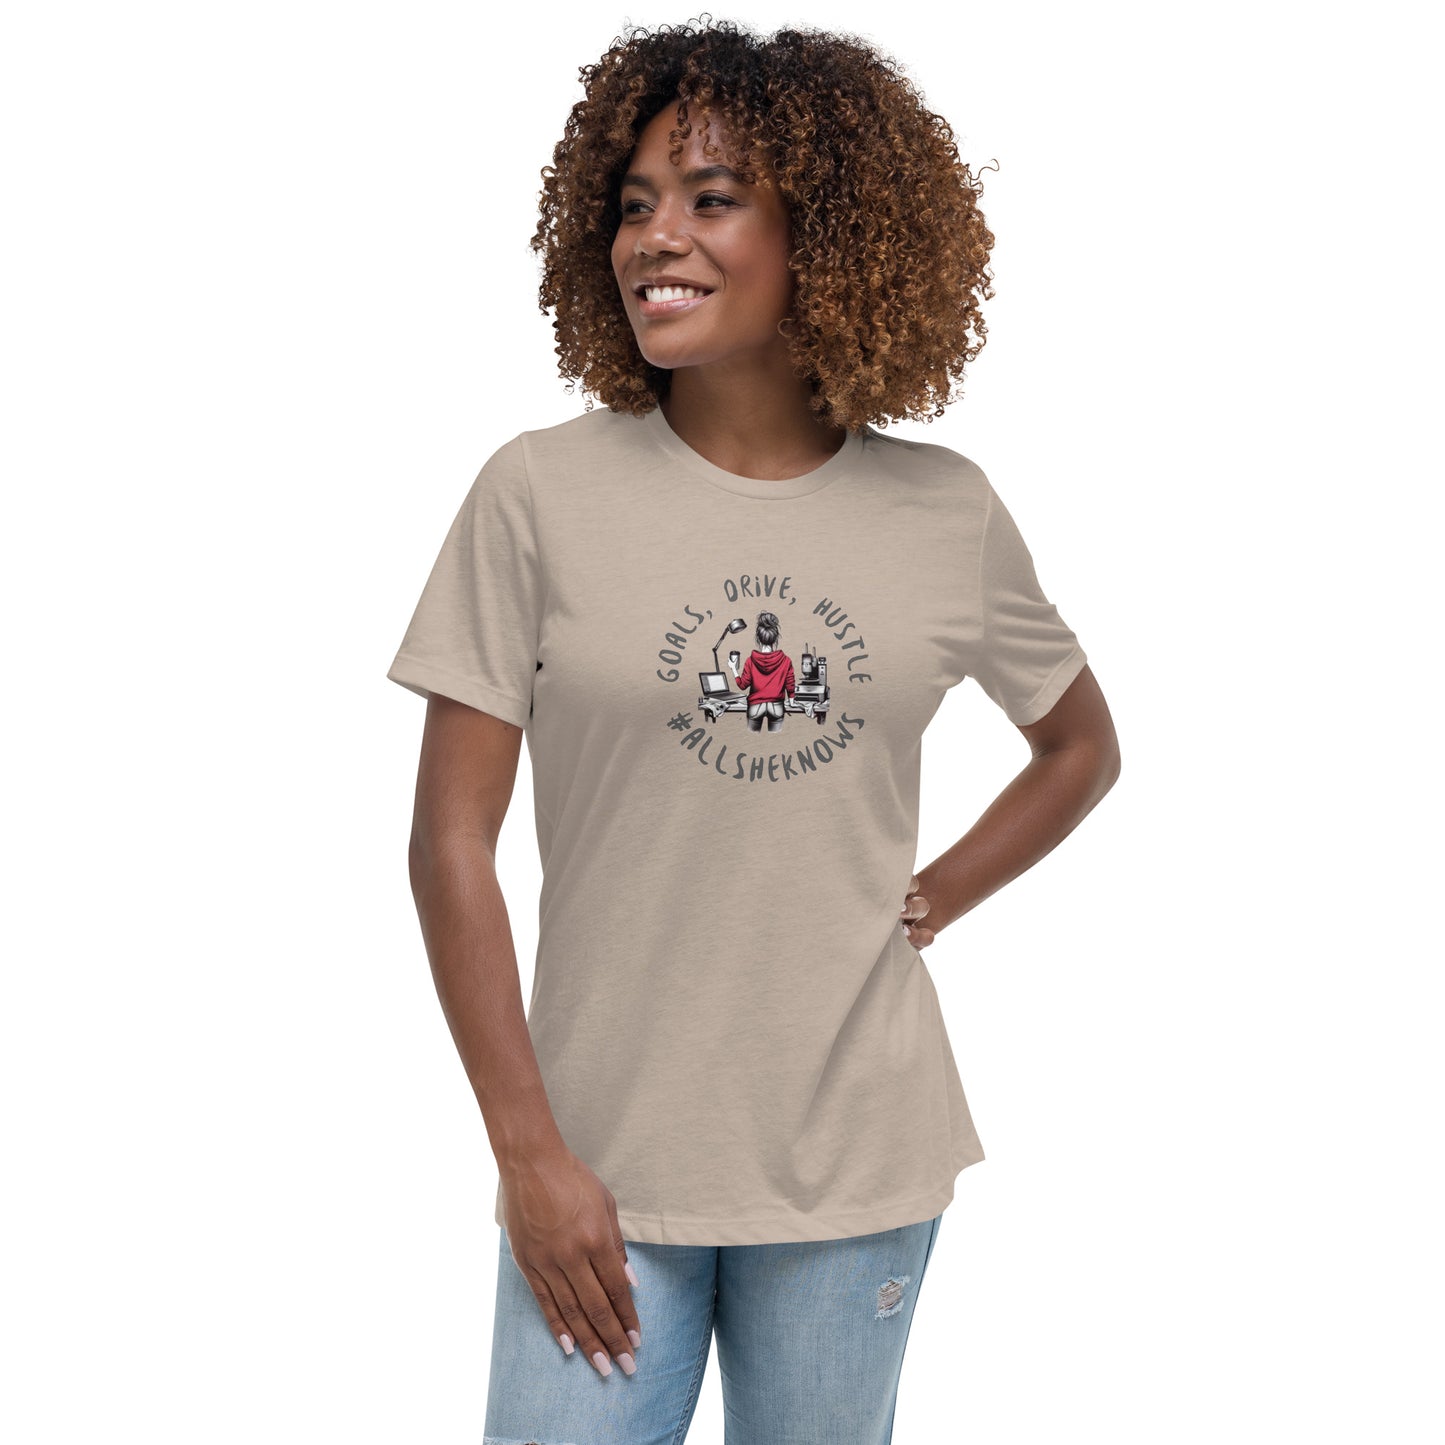 Goals Drive & Hustle Women's Relaxed T-Shirt CedarHill Country Market